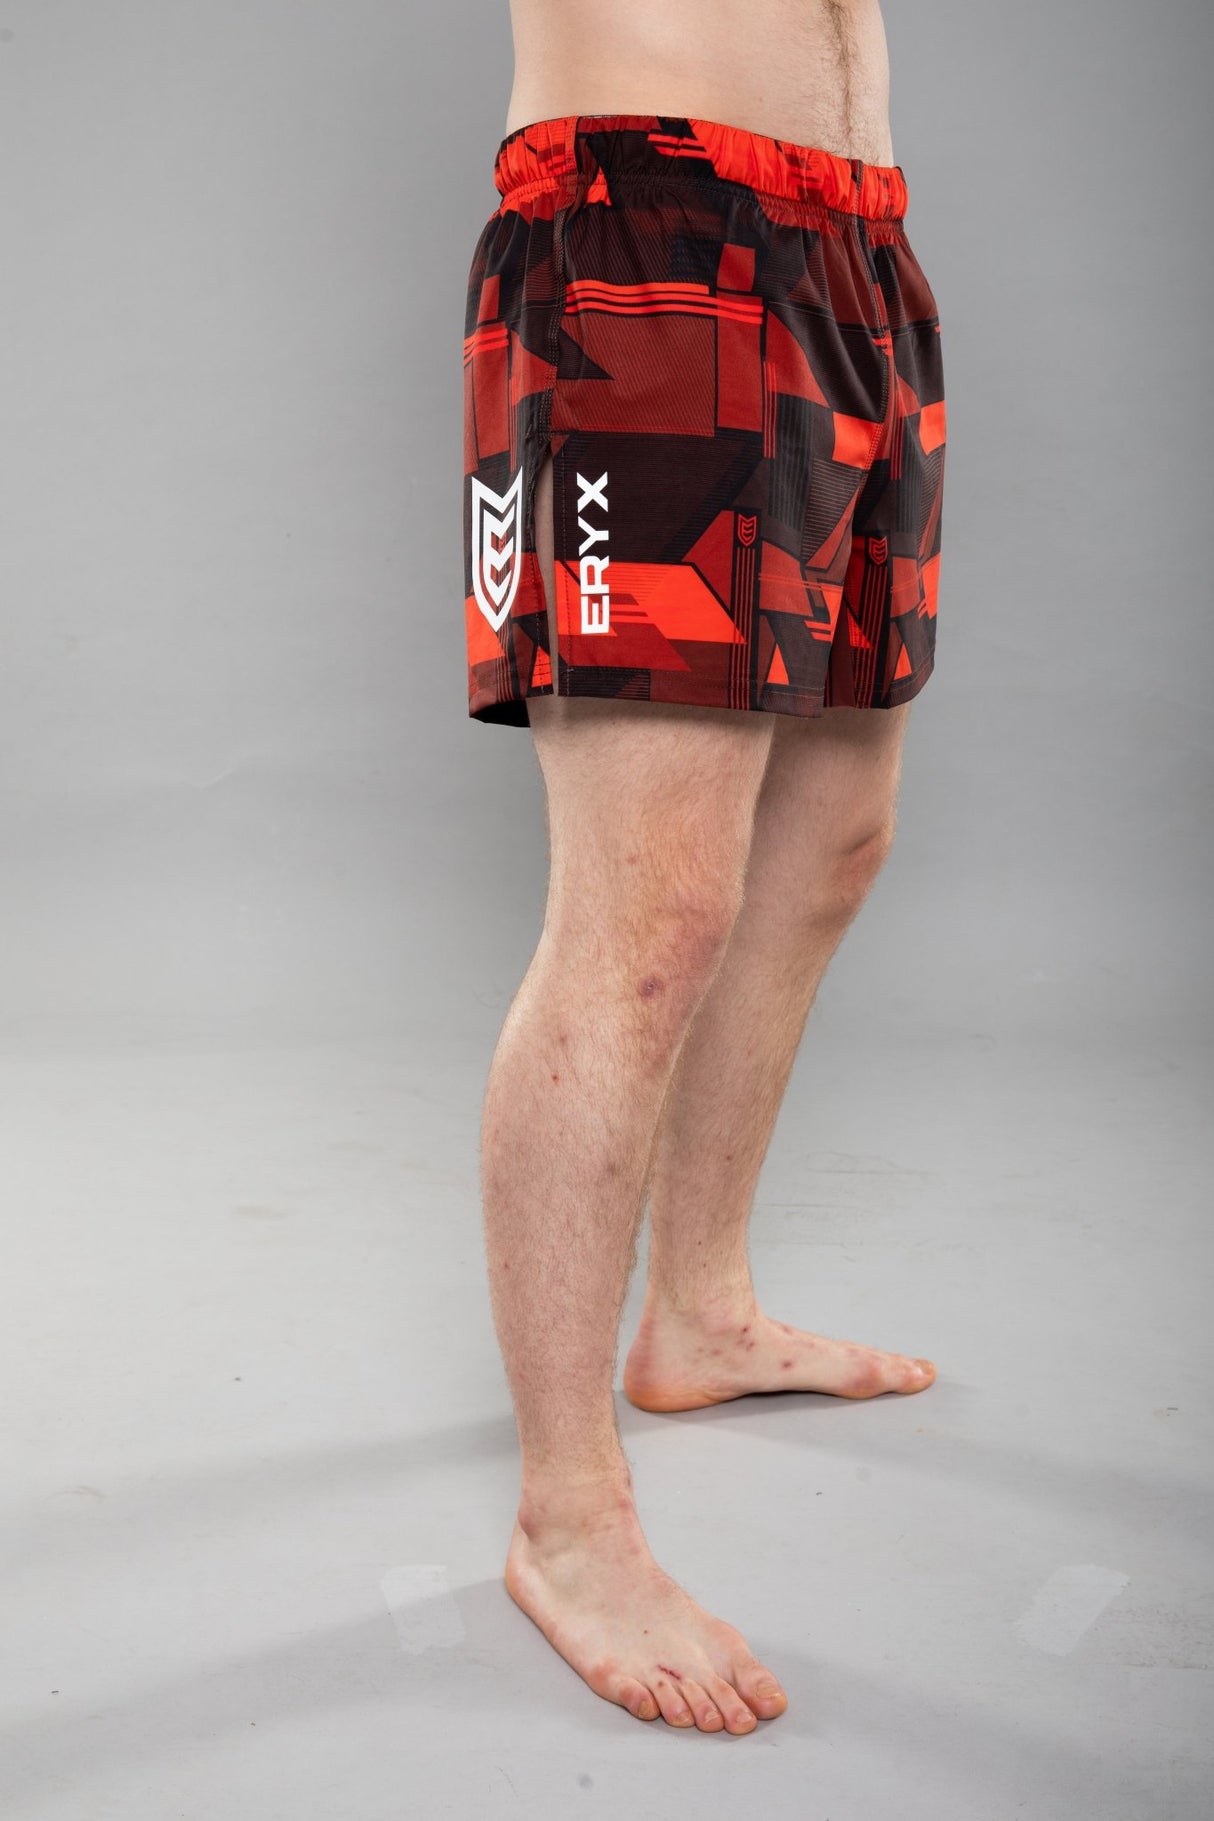 Eryx Glitch Hybrid MMA Shorts Red - Eryxgear